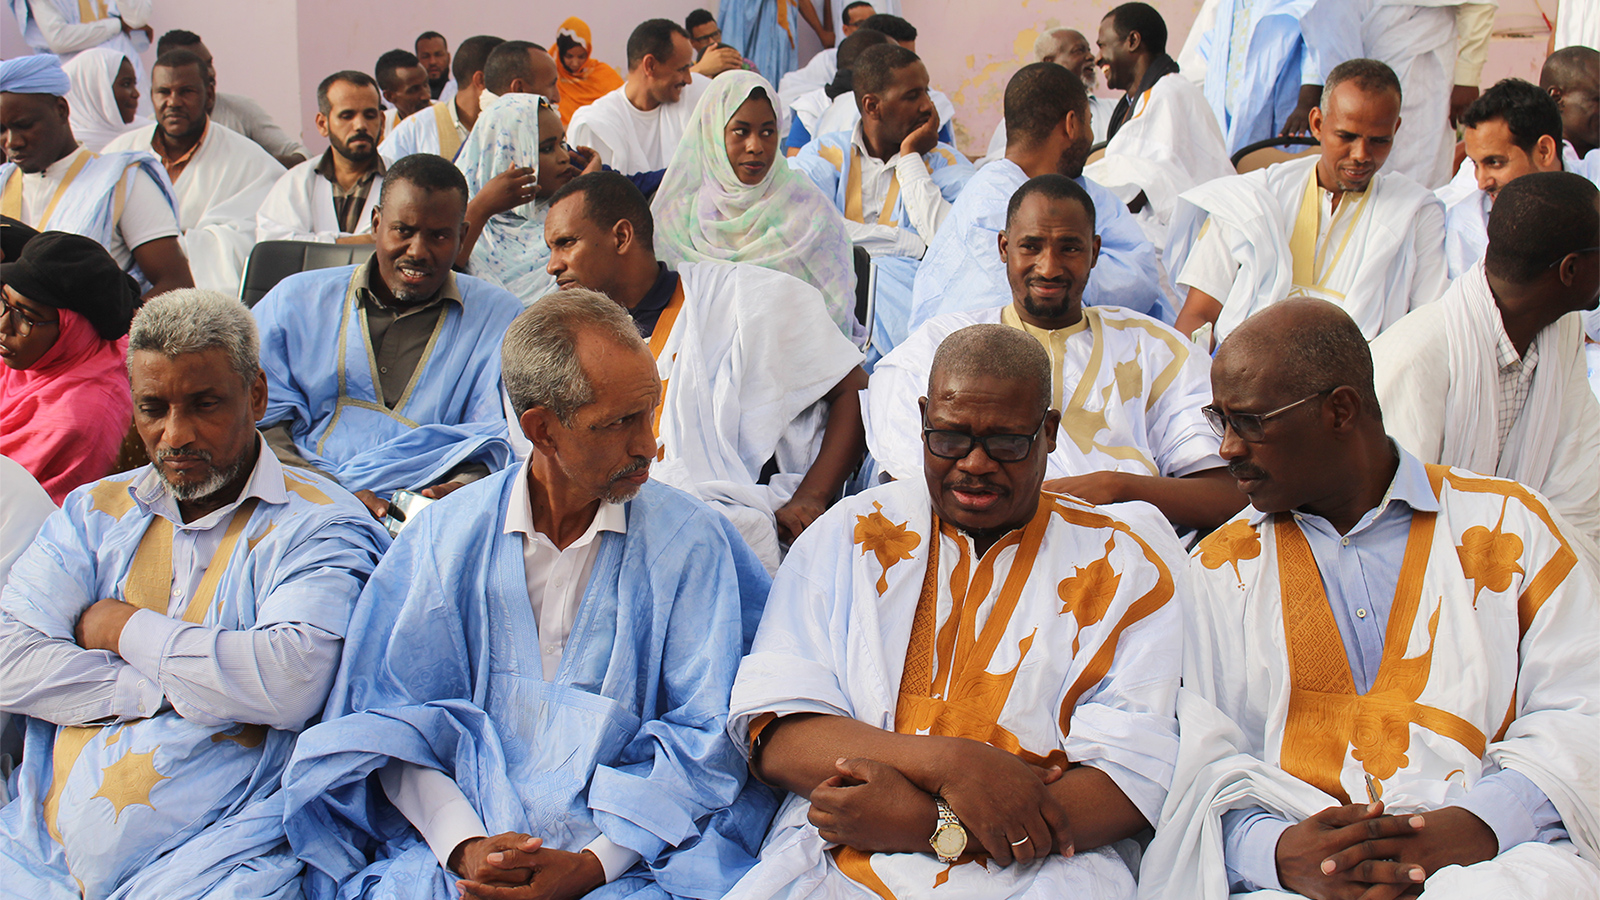 في العشرية الماضية لم تشهد قضية رأي عام بموريتانيا زخما كالذي حظيت به قضية الحراطين(الجزيرة نت)